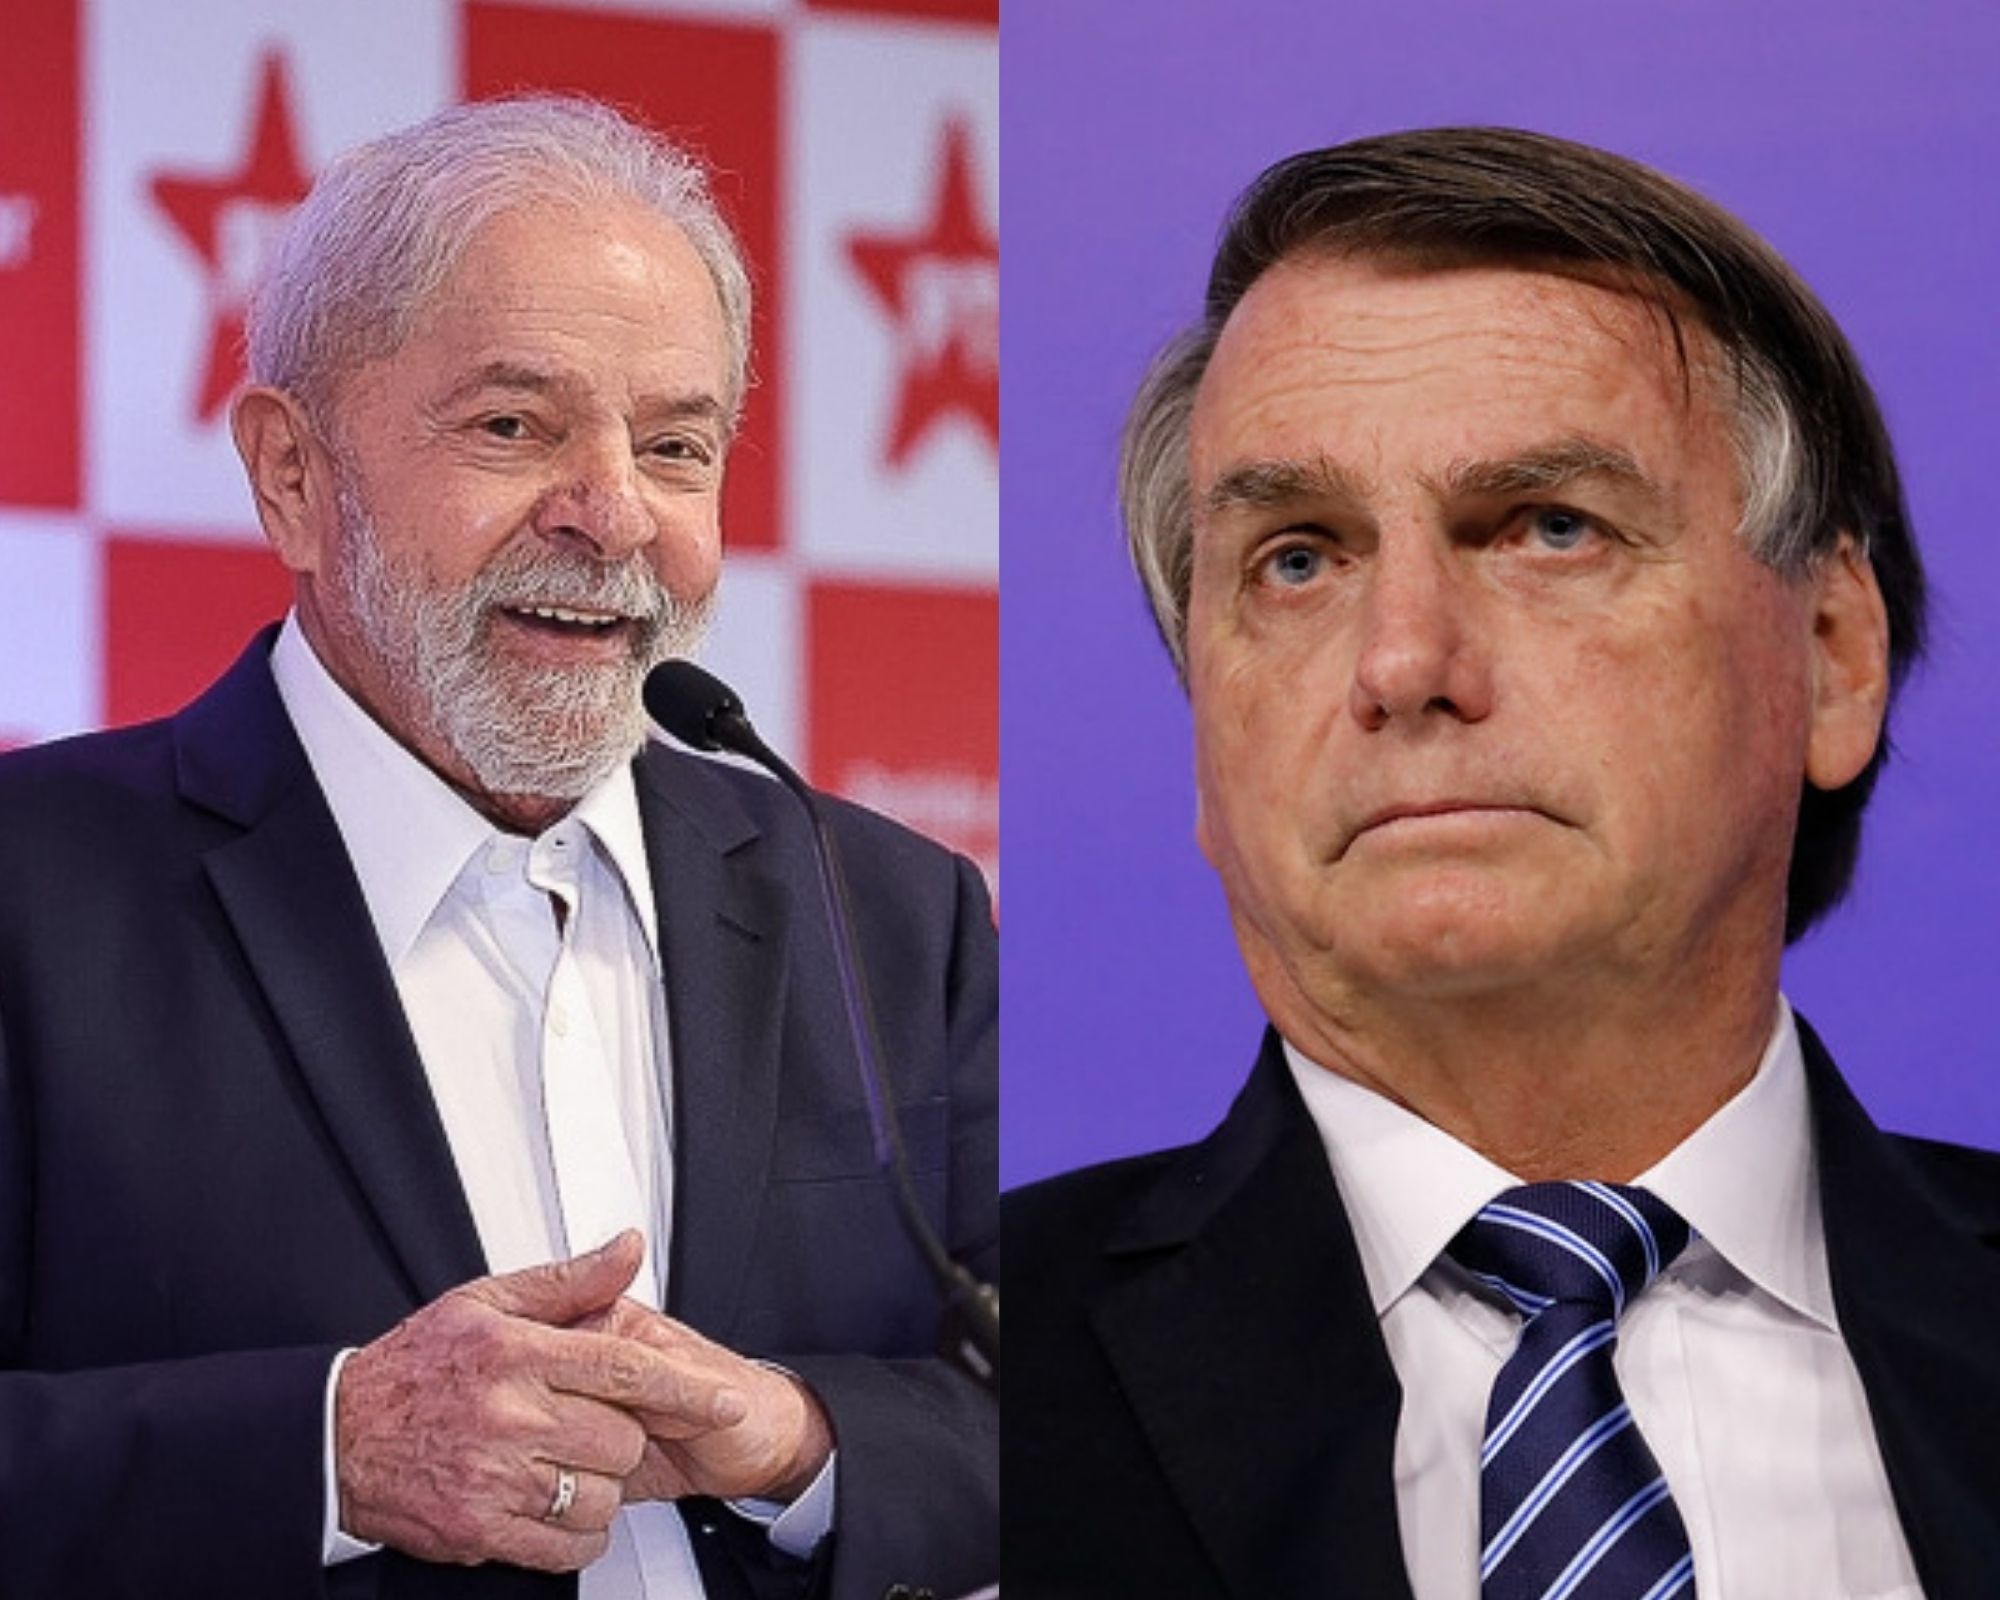 Paraná Pesquisas: Lula tem 41,1% contra 35,1% de Bolsonaro